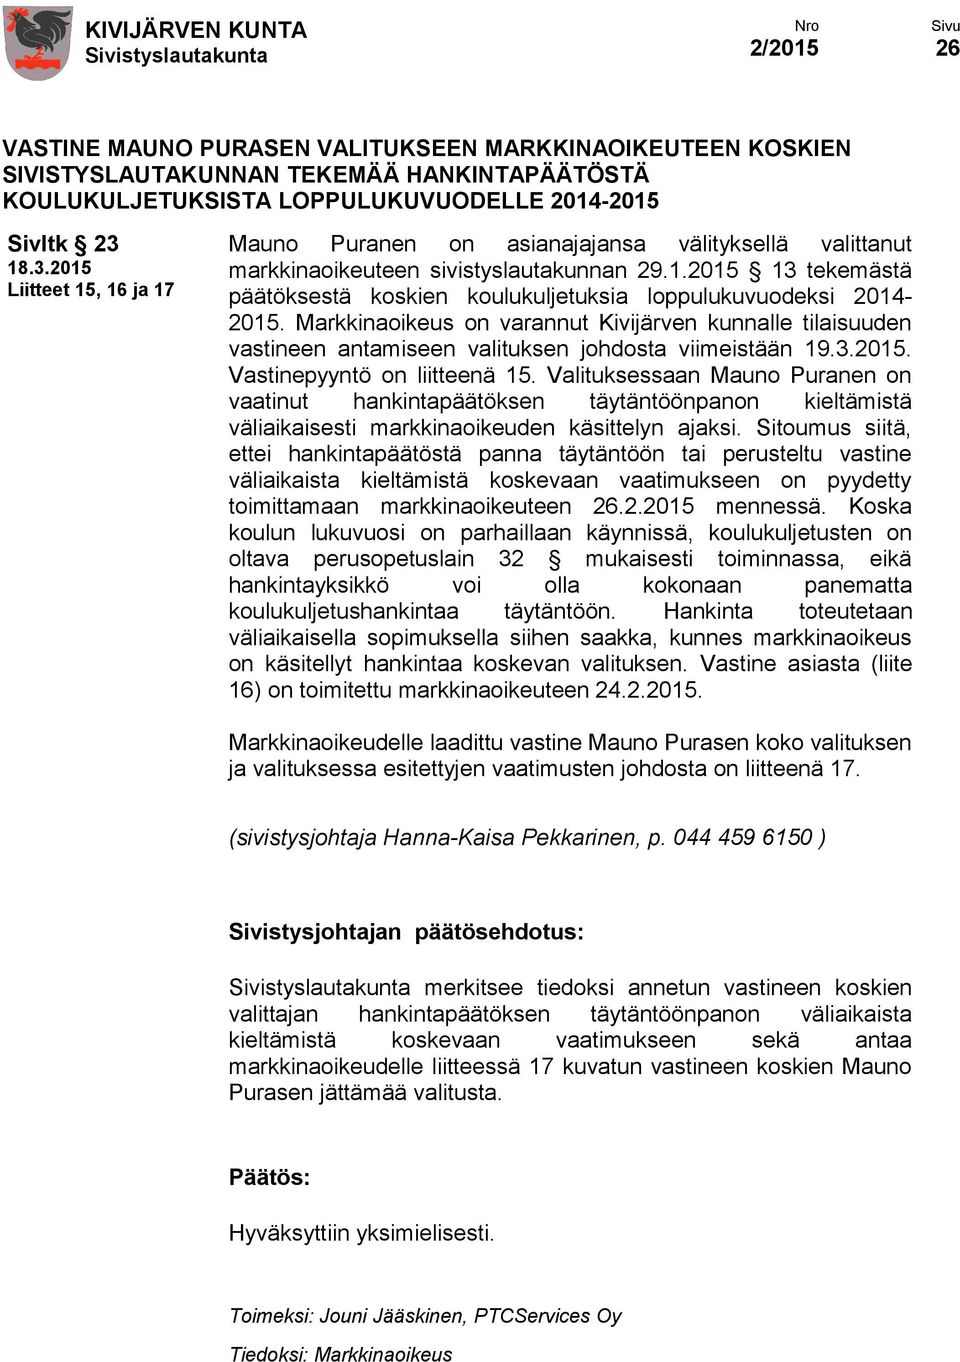 Markkinaoikeus on varannut Kivijärven kunnalle tilaisuuden vastineen antamiseen valituksen johdosta viimeistään 19.3.2015. Vastinepyyntö on liitteenä 15.